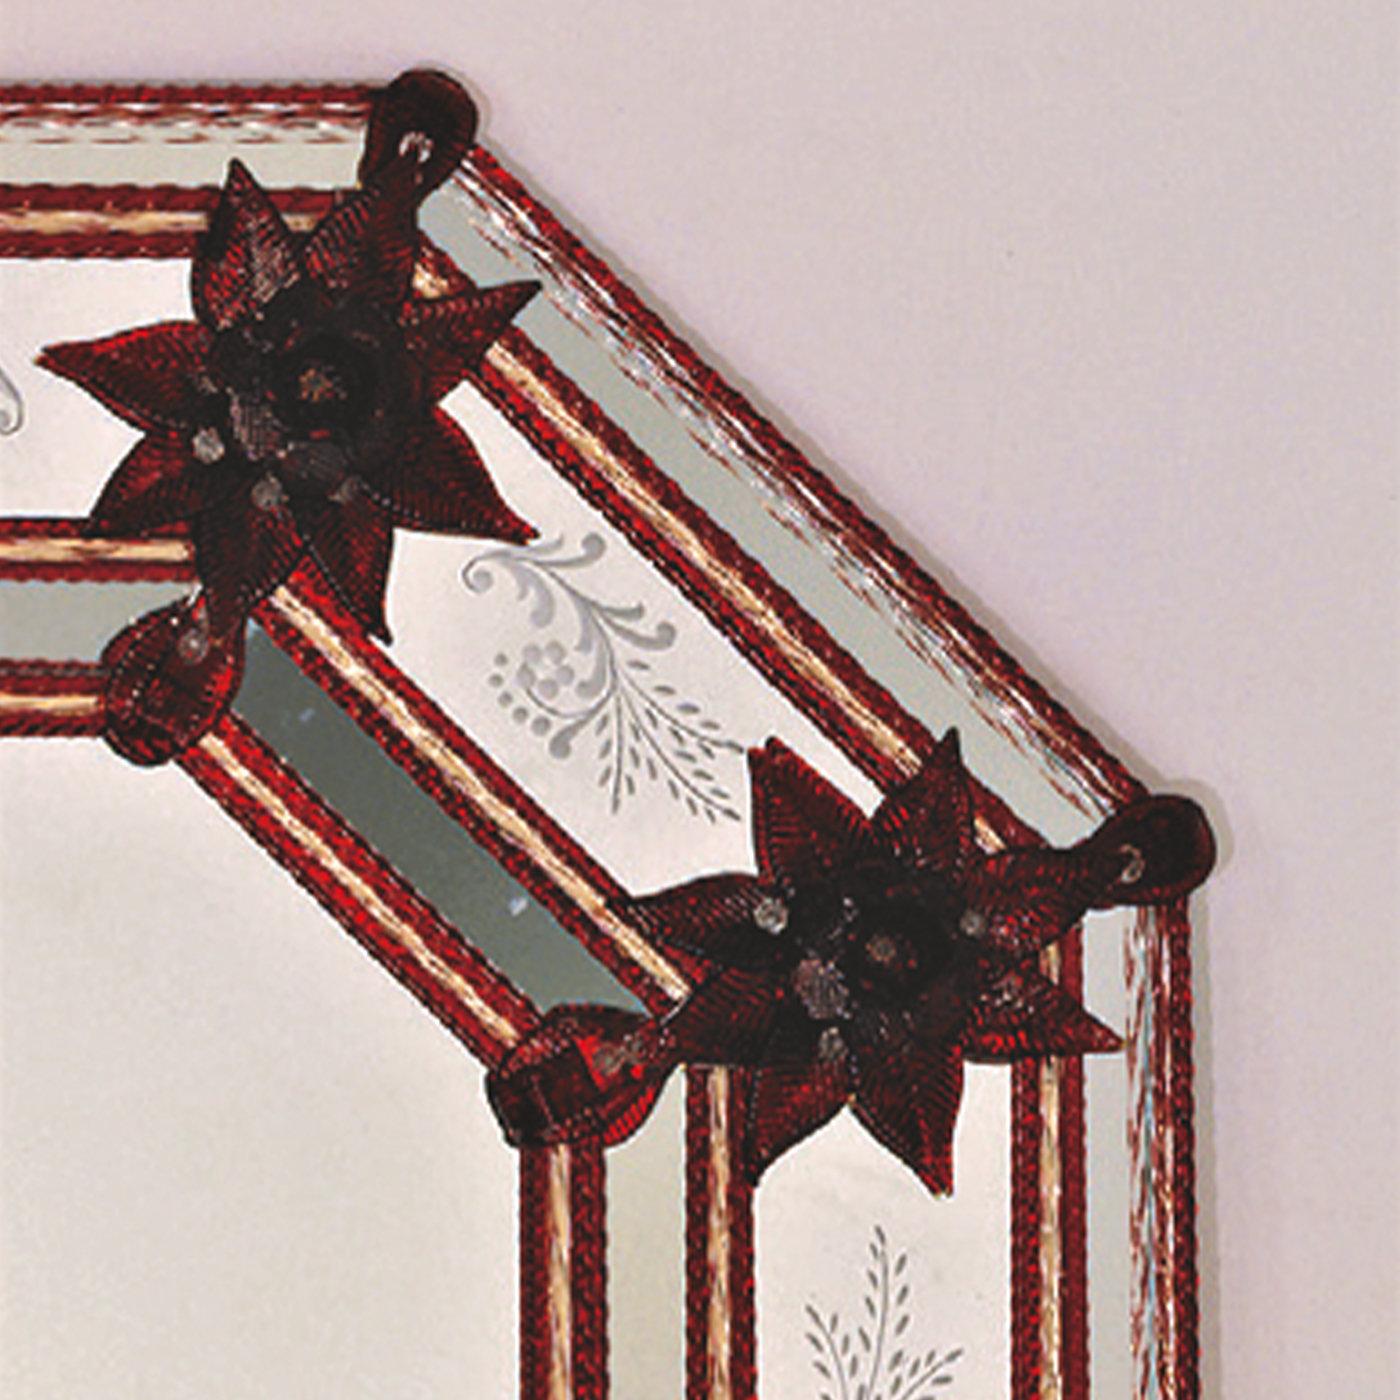 Dieser Spiegel ist reich an einzigartigen Details, die von der Kunstfertigkeit der Glasmeister aus Murano zeugen. Rote Glasblumen, Blätter und Konturlinien akzentuieren den länglichen achteckigen Rahmen, der mit fein handgeätzten Wedelmotiven